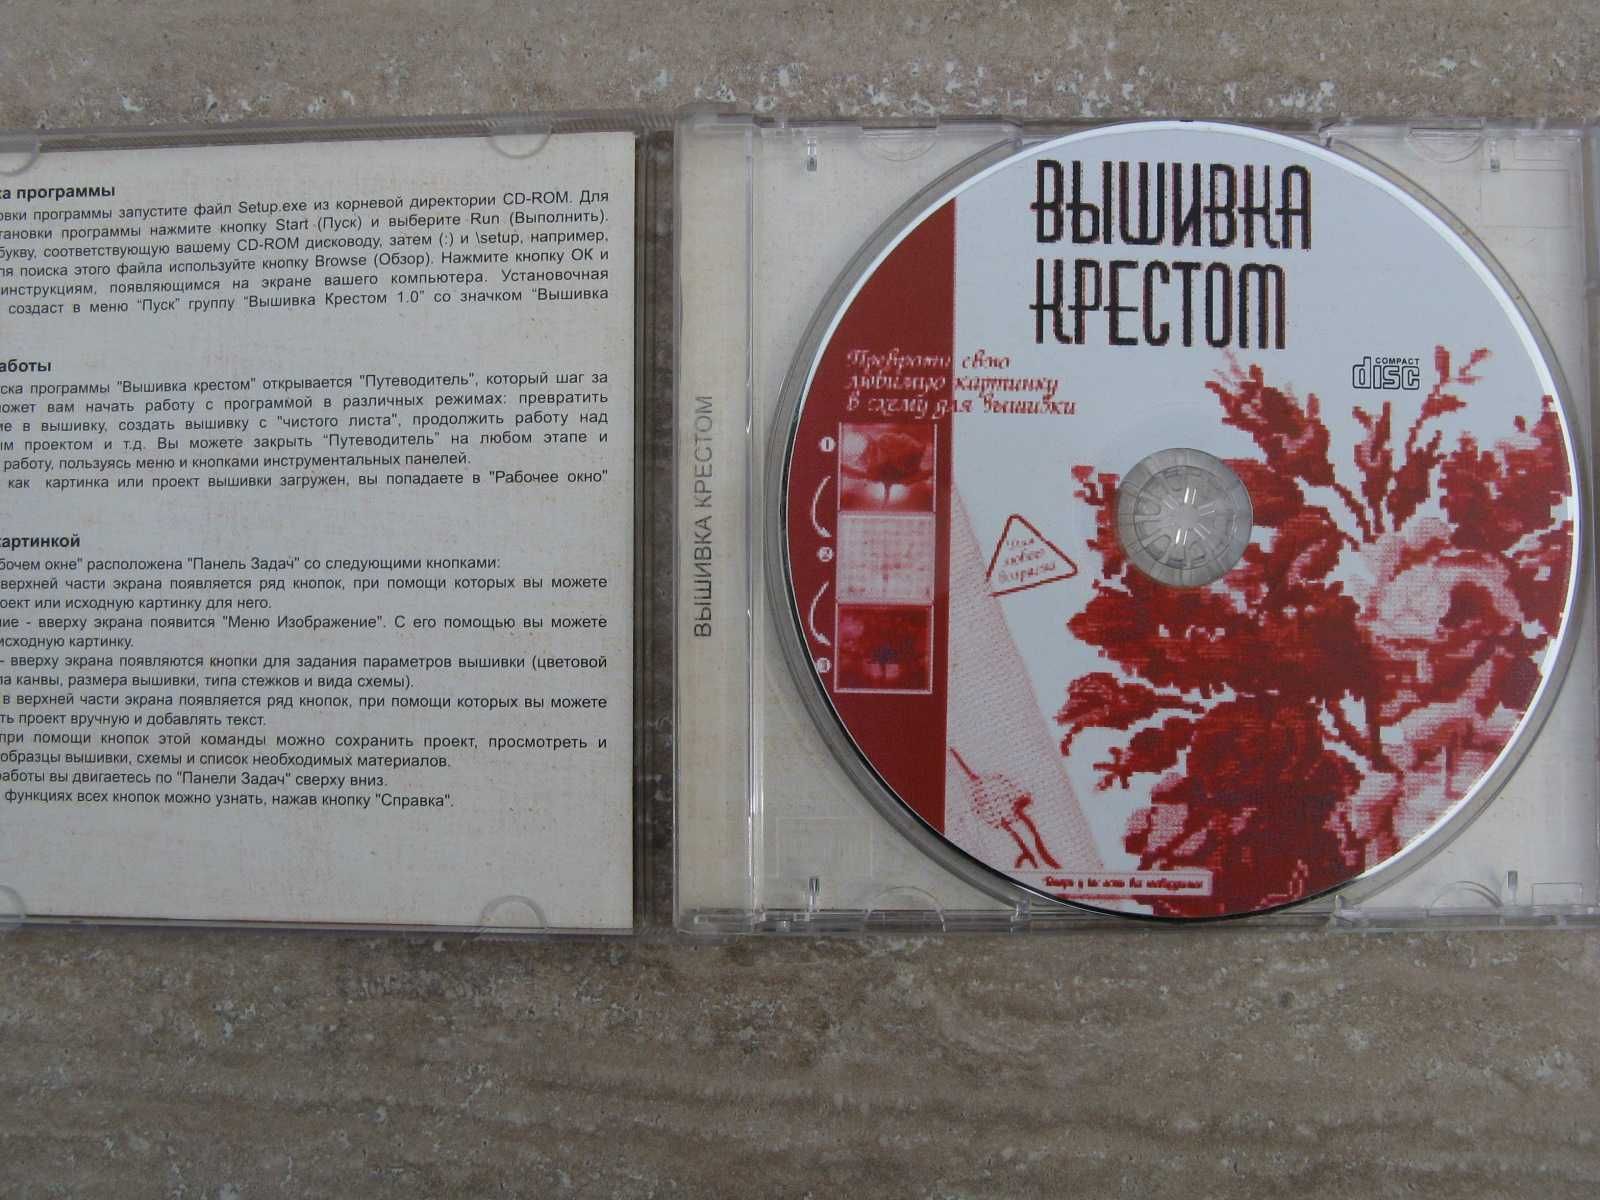 Продам редкий CD диск с программой Вышивка крестом лиценз